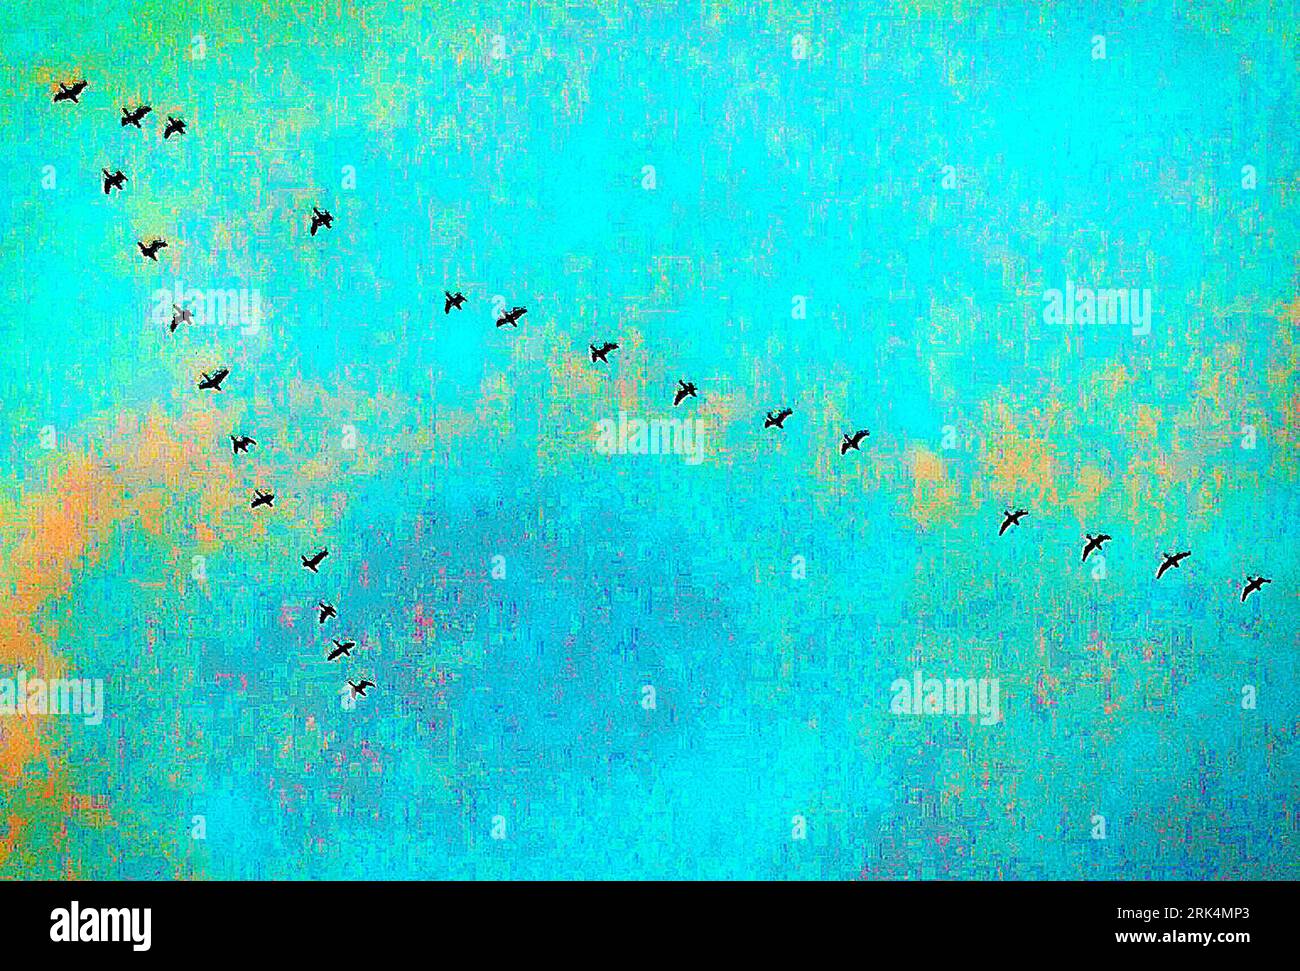 Un gregge di uccelli contro un cielo blu. Immagine grintosa con molto rumore. Sfondo blu Foto Stock